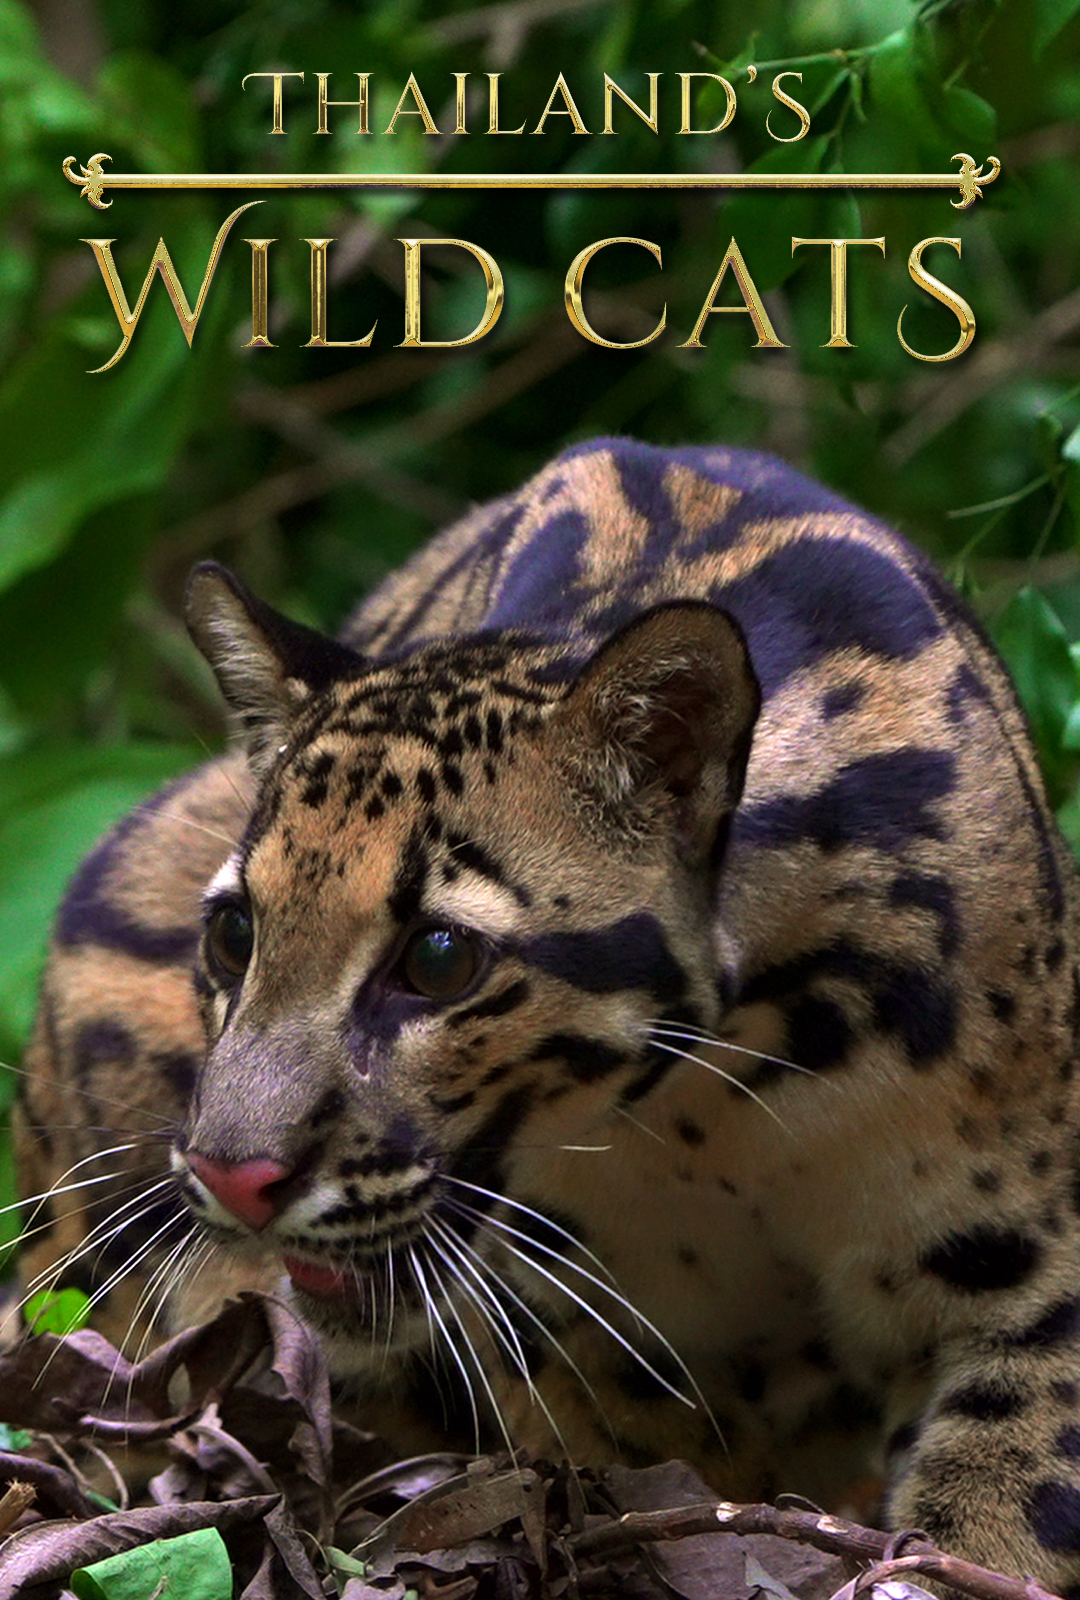 ดูหนังออนไลน์ฟรี Thailands Wild Cats (2021) ไทยแลนด์ ไวลดฺ แคทส